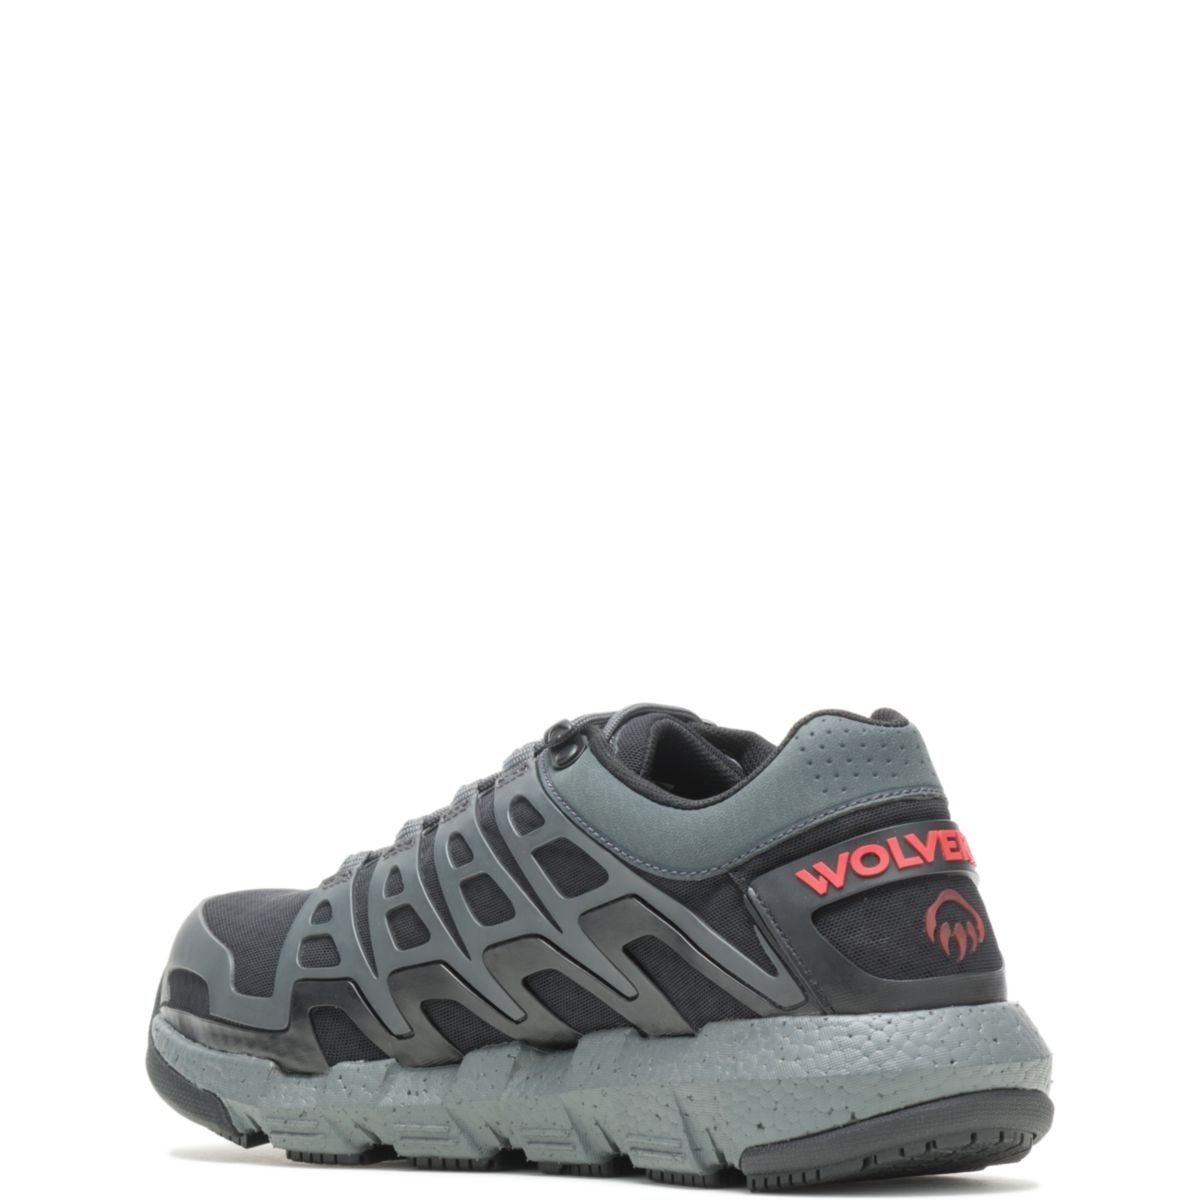 WOLVERINE Men's Rev Vent UltraSpringâ¢ DuraShocksÂ® CarbonMAXÂ® Composite Toe Work Shoe Charcoal - W211016 CHARCOAL - CHARCOAL, 8